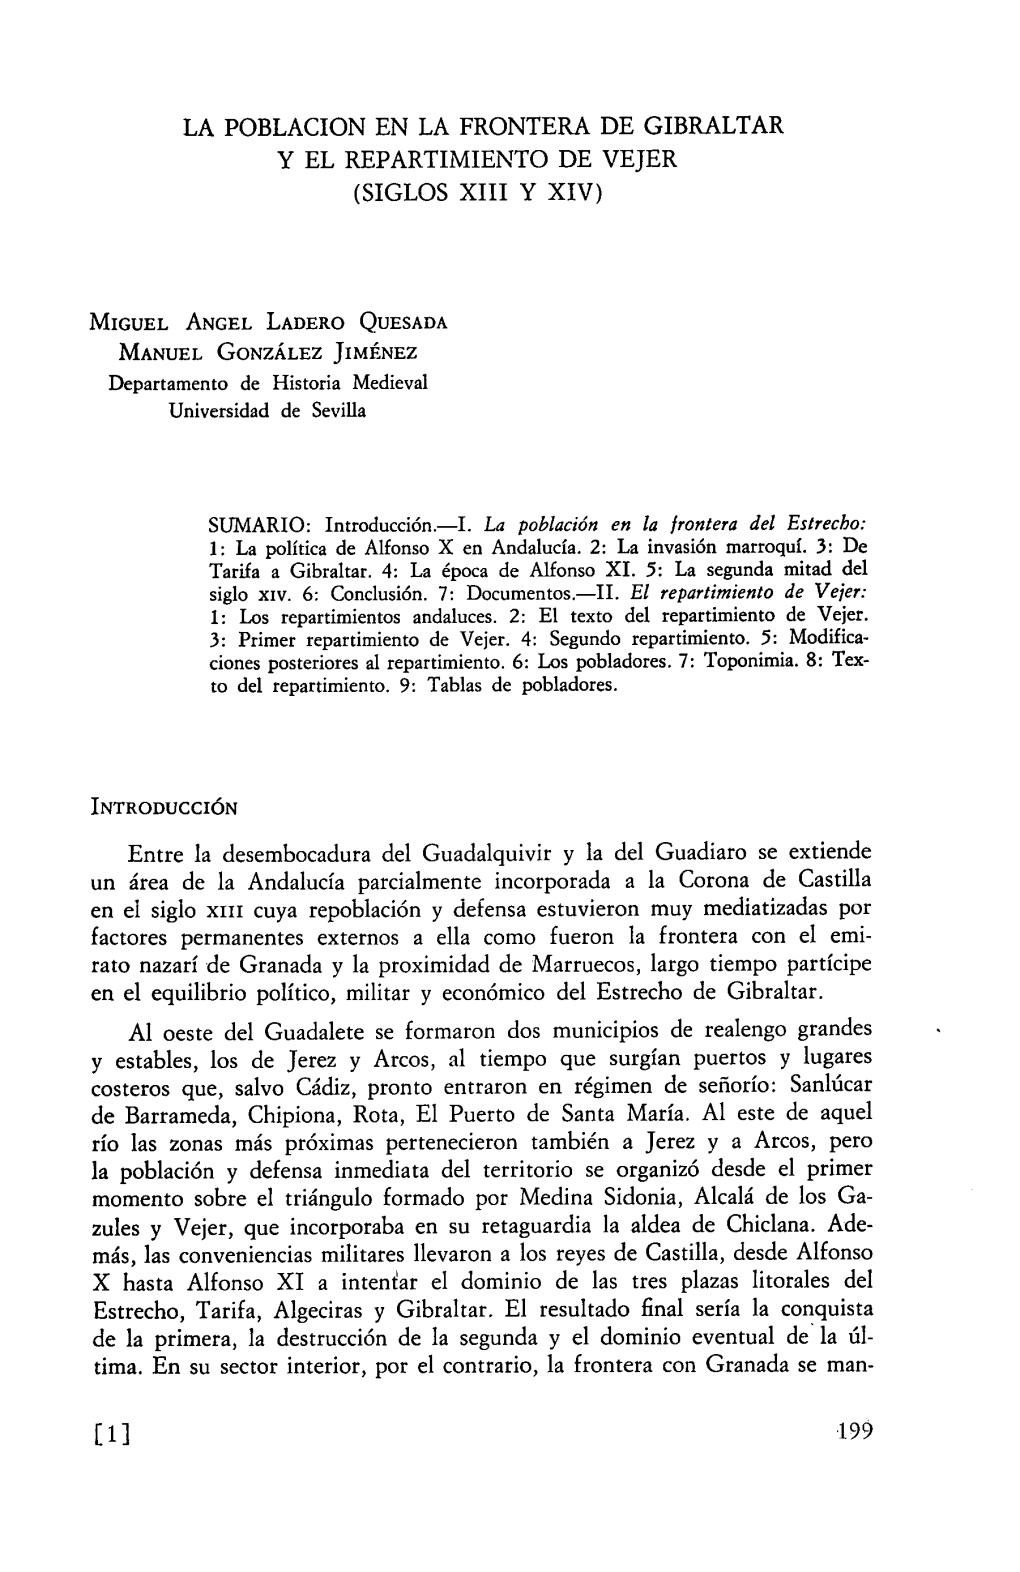 LA POBLACION EN LA FRONTERA DE GIBRALTAR Y EL REPARTIMIENTO DE VEJER (SIGLOS XIII Y XIV) Entre La Desembocadura Del Guadalquivir